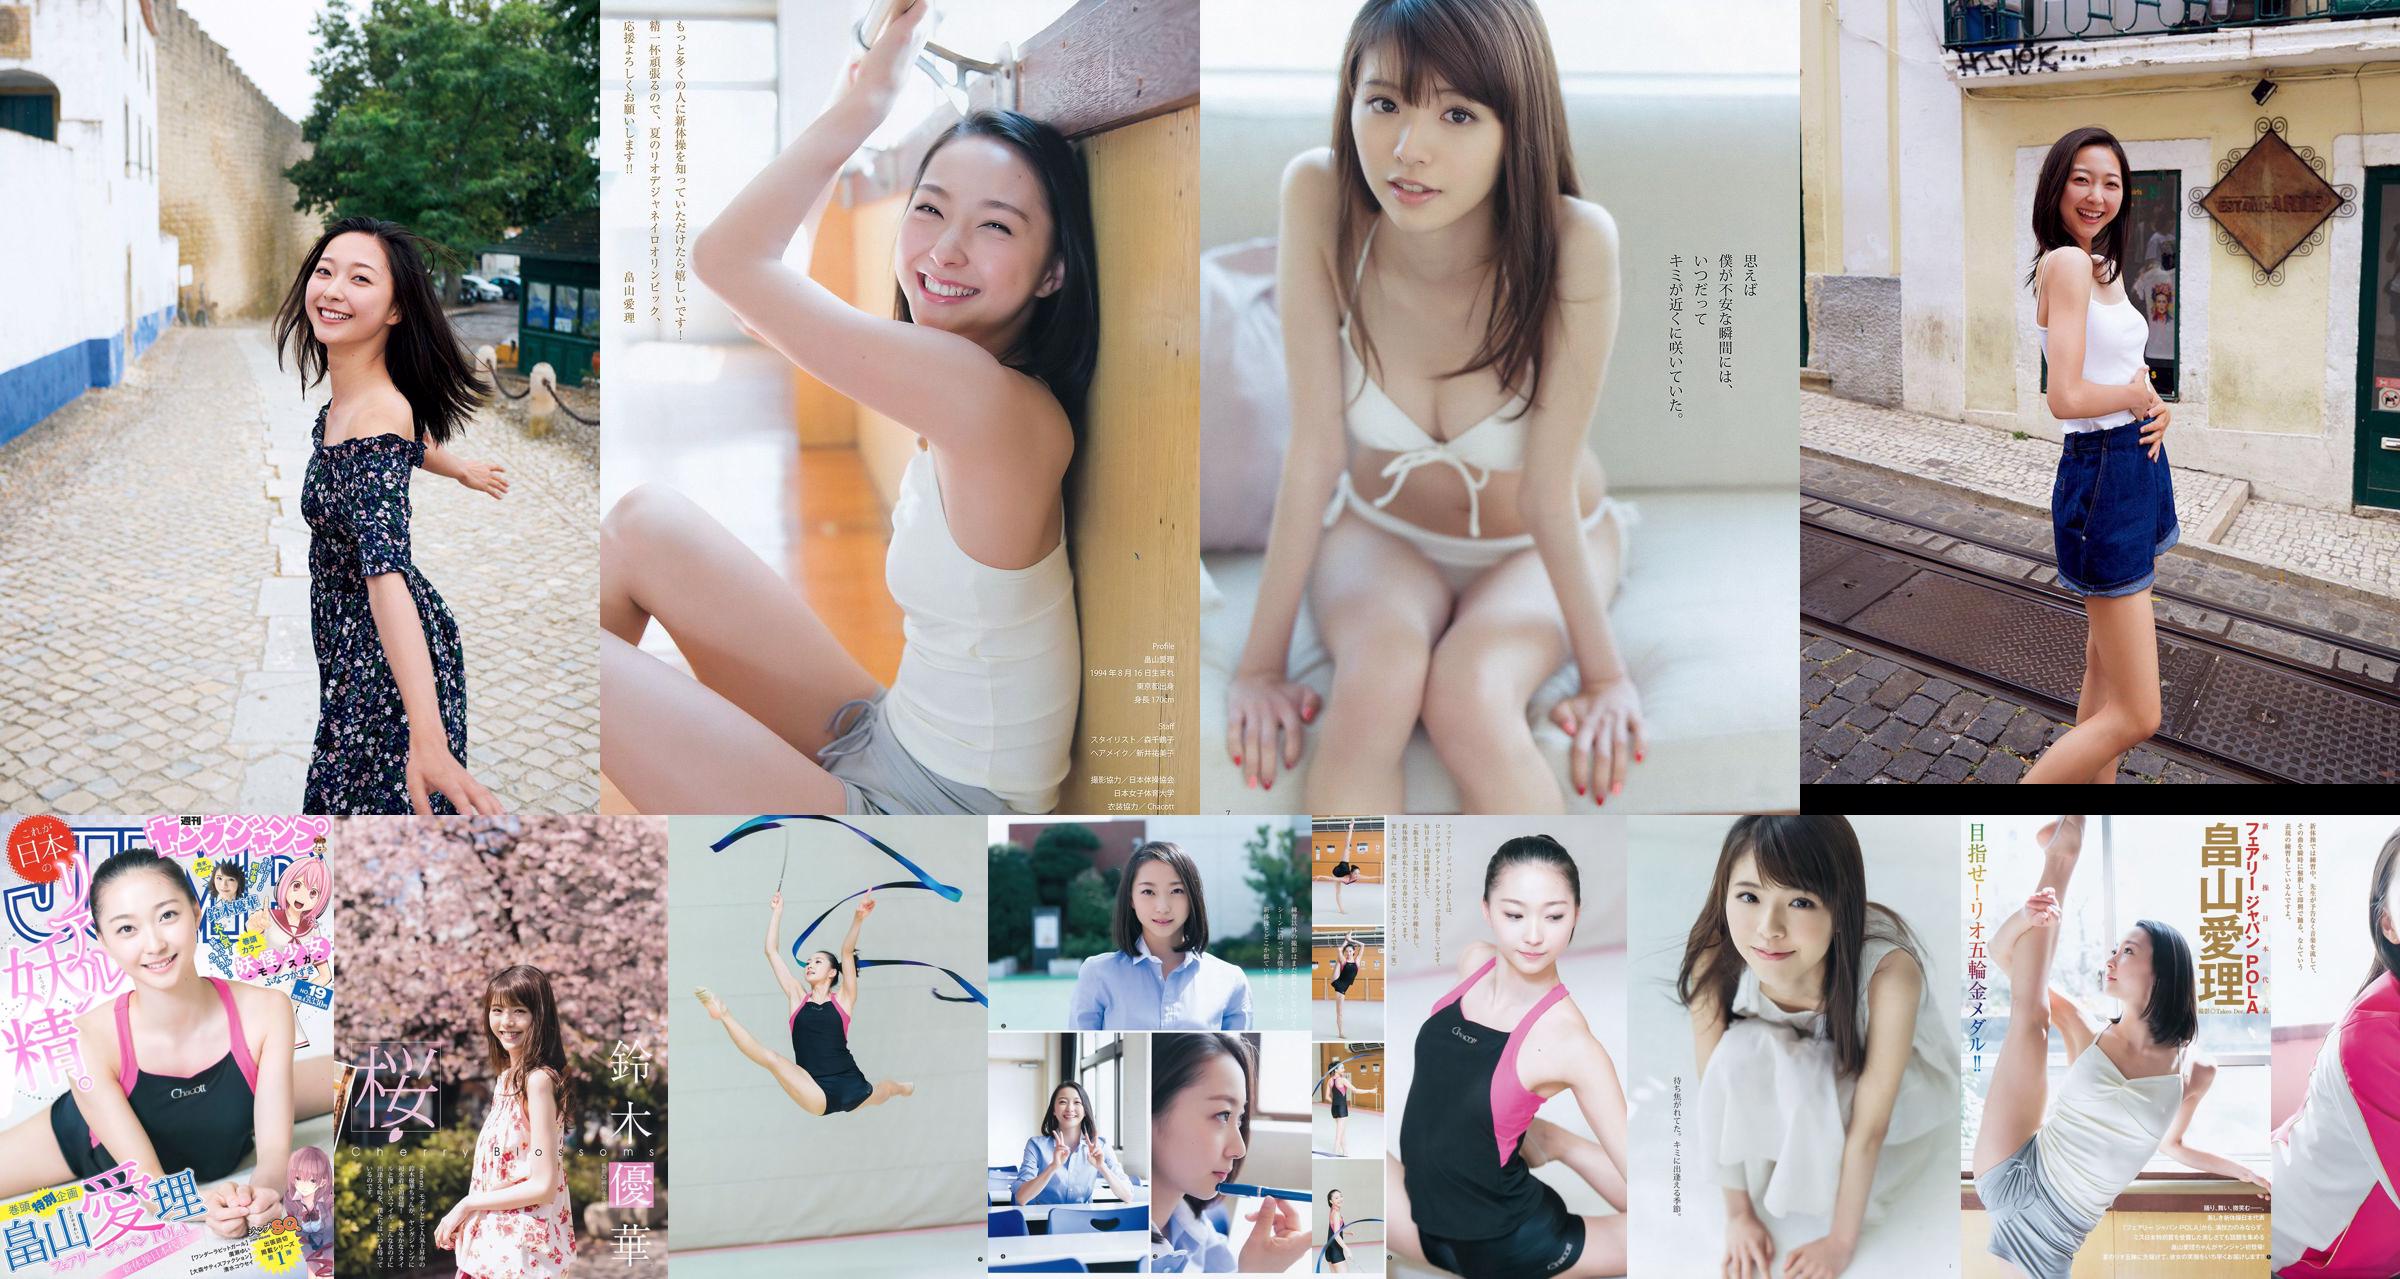 [ENTAME] Mai Shiraishi Nanase Nishino Rena Shimada Yui Takano Ảnh số tháng 3 năm 2014 No.bc2921 Trang 2